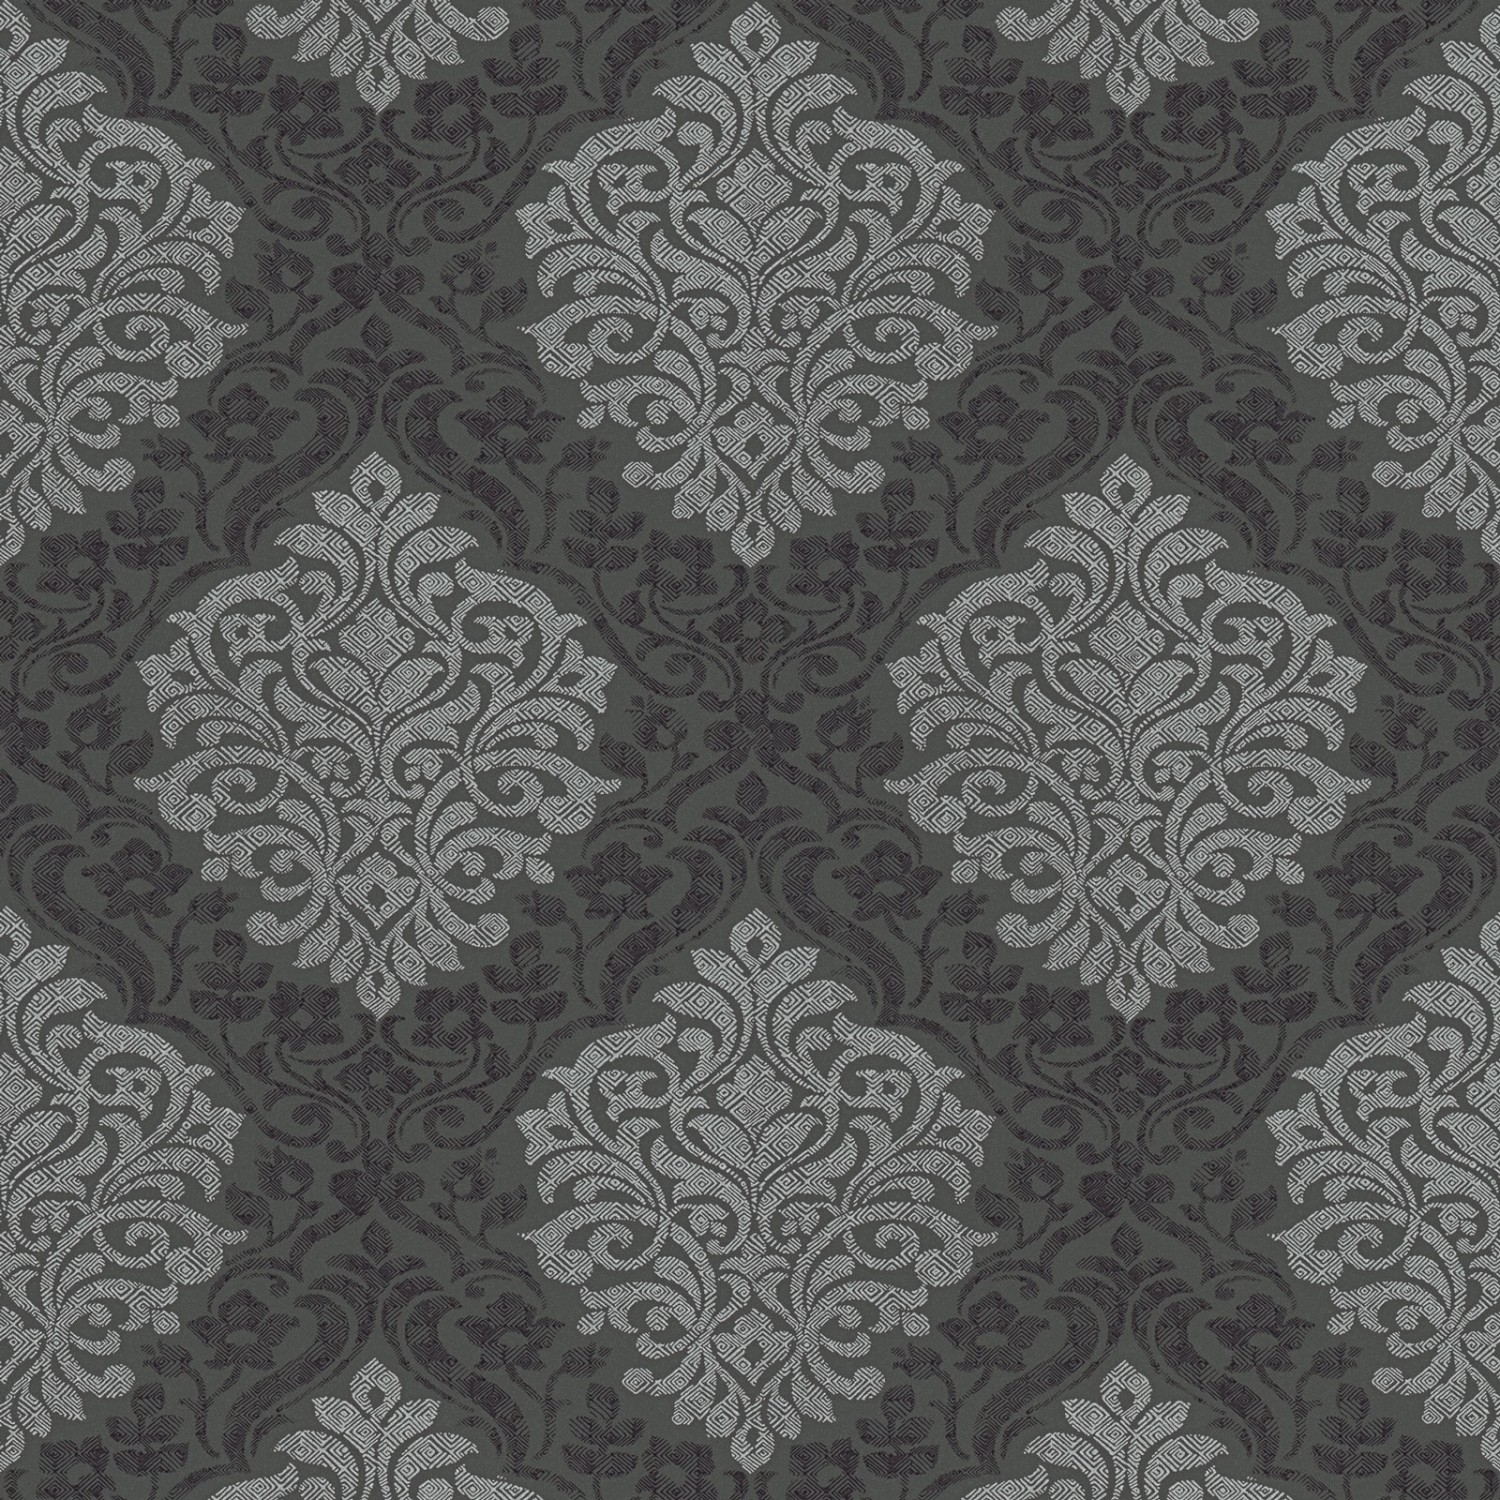 Bricoflor Neobarock Tapete in Schwarz Grau Moderne Barock Tapete Ideal für Schlafzimmer und Wohnzimmer Edle Vliestapete 